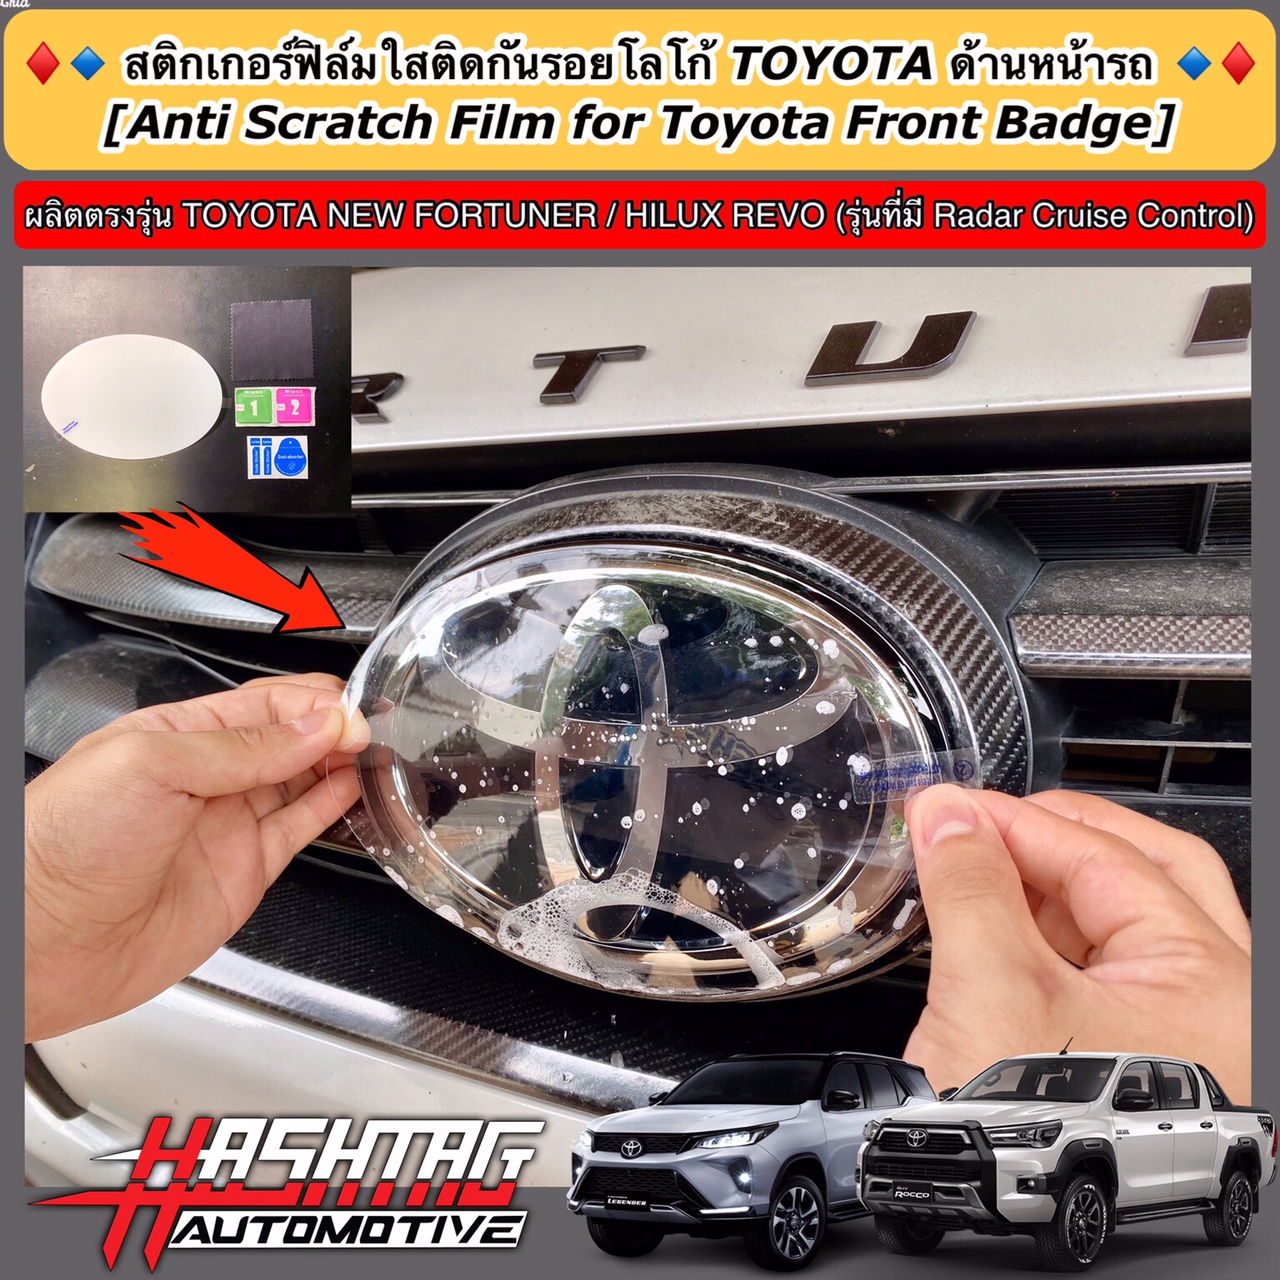 สติกเกอร์ฟิล์มใสติดกันรอยโลโก้ TOYOTA ด้านหน้ารถ (Anti Scratch Film for Toyota Front Badge) สำหรับ Toyota New Fortuner / Hilux Revo (รุ่นที่มี Radar Cruise Control)